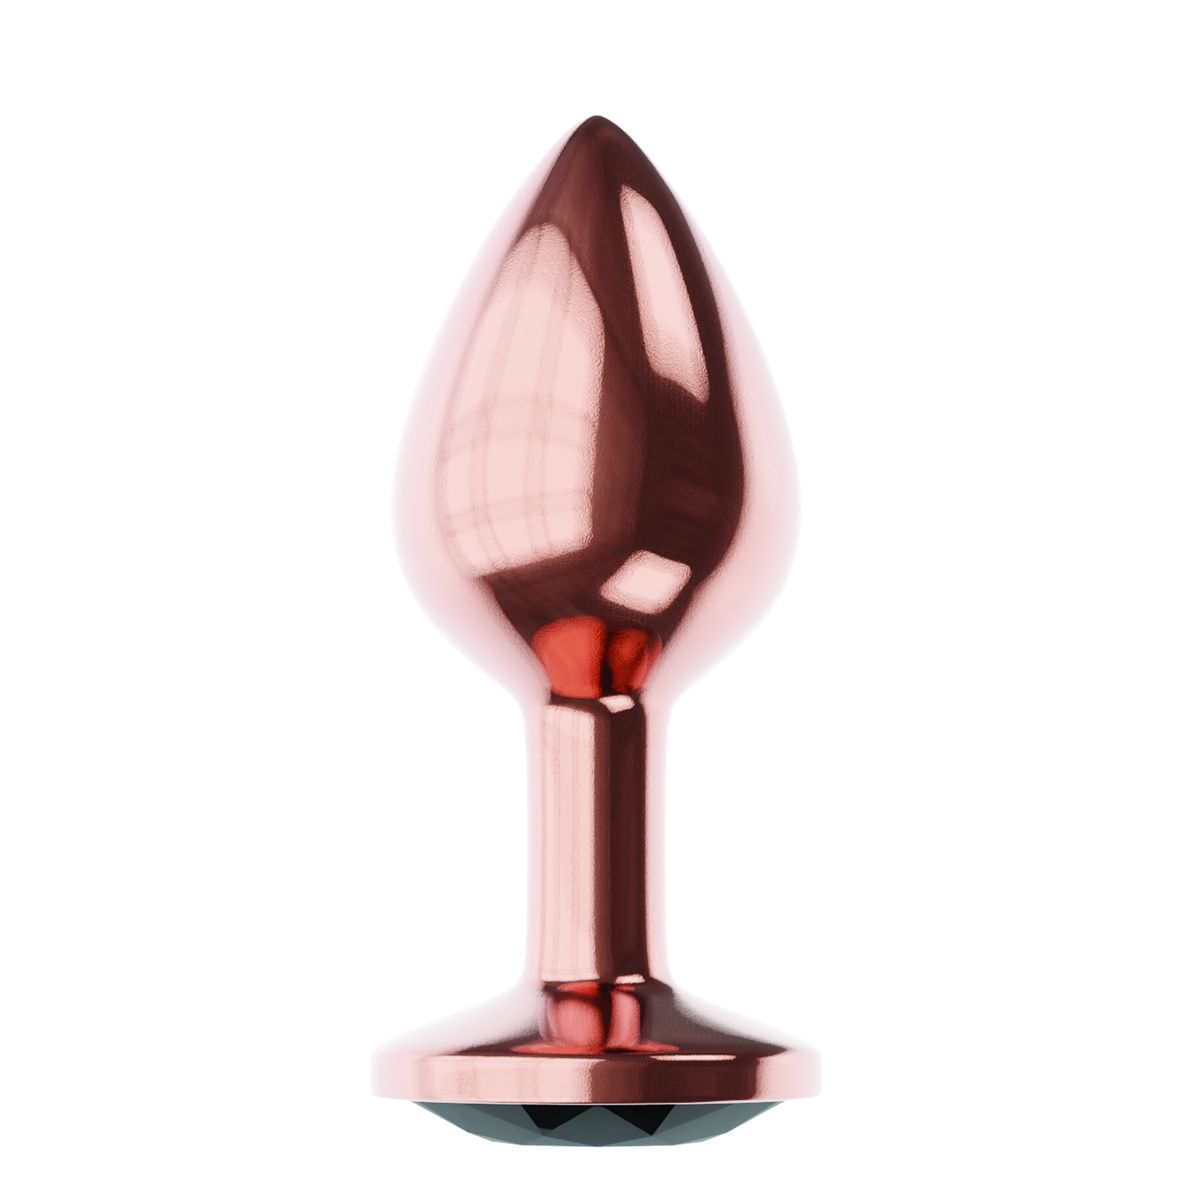 Купить Пробка цвета розового золота с черным кристаллом Diamond Jet Shine L - 8,3 см. в Москве.